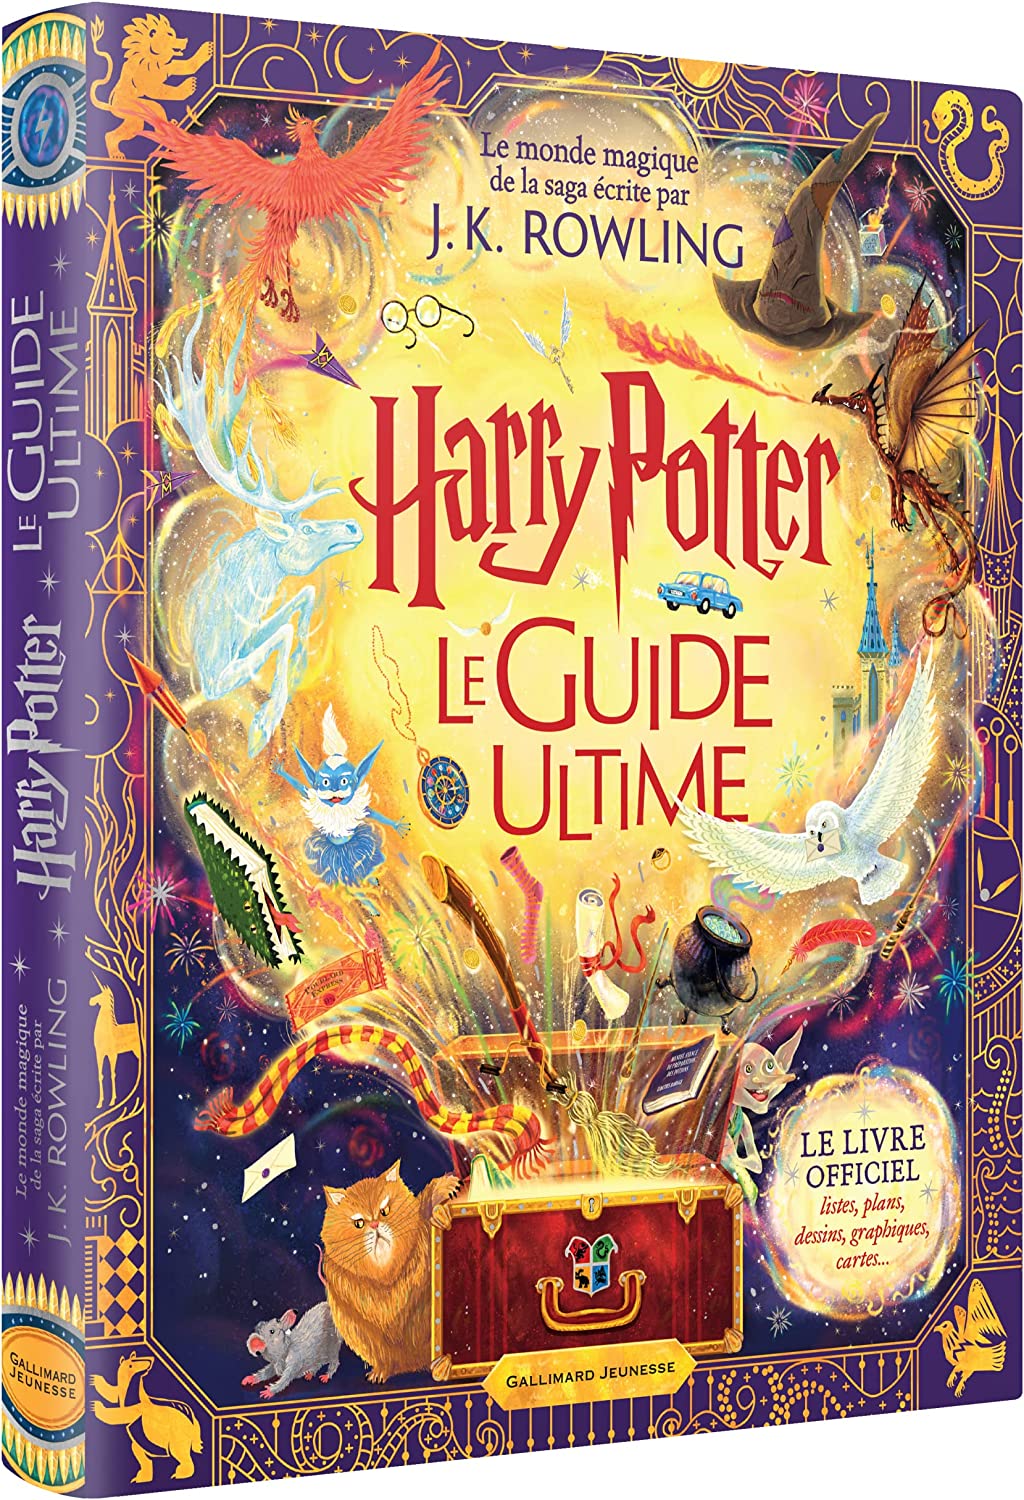 Harry Potter - Destination Serdaigle : Coffret magique du Monde des  Sorciers - Boutique Harry Potter